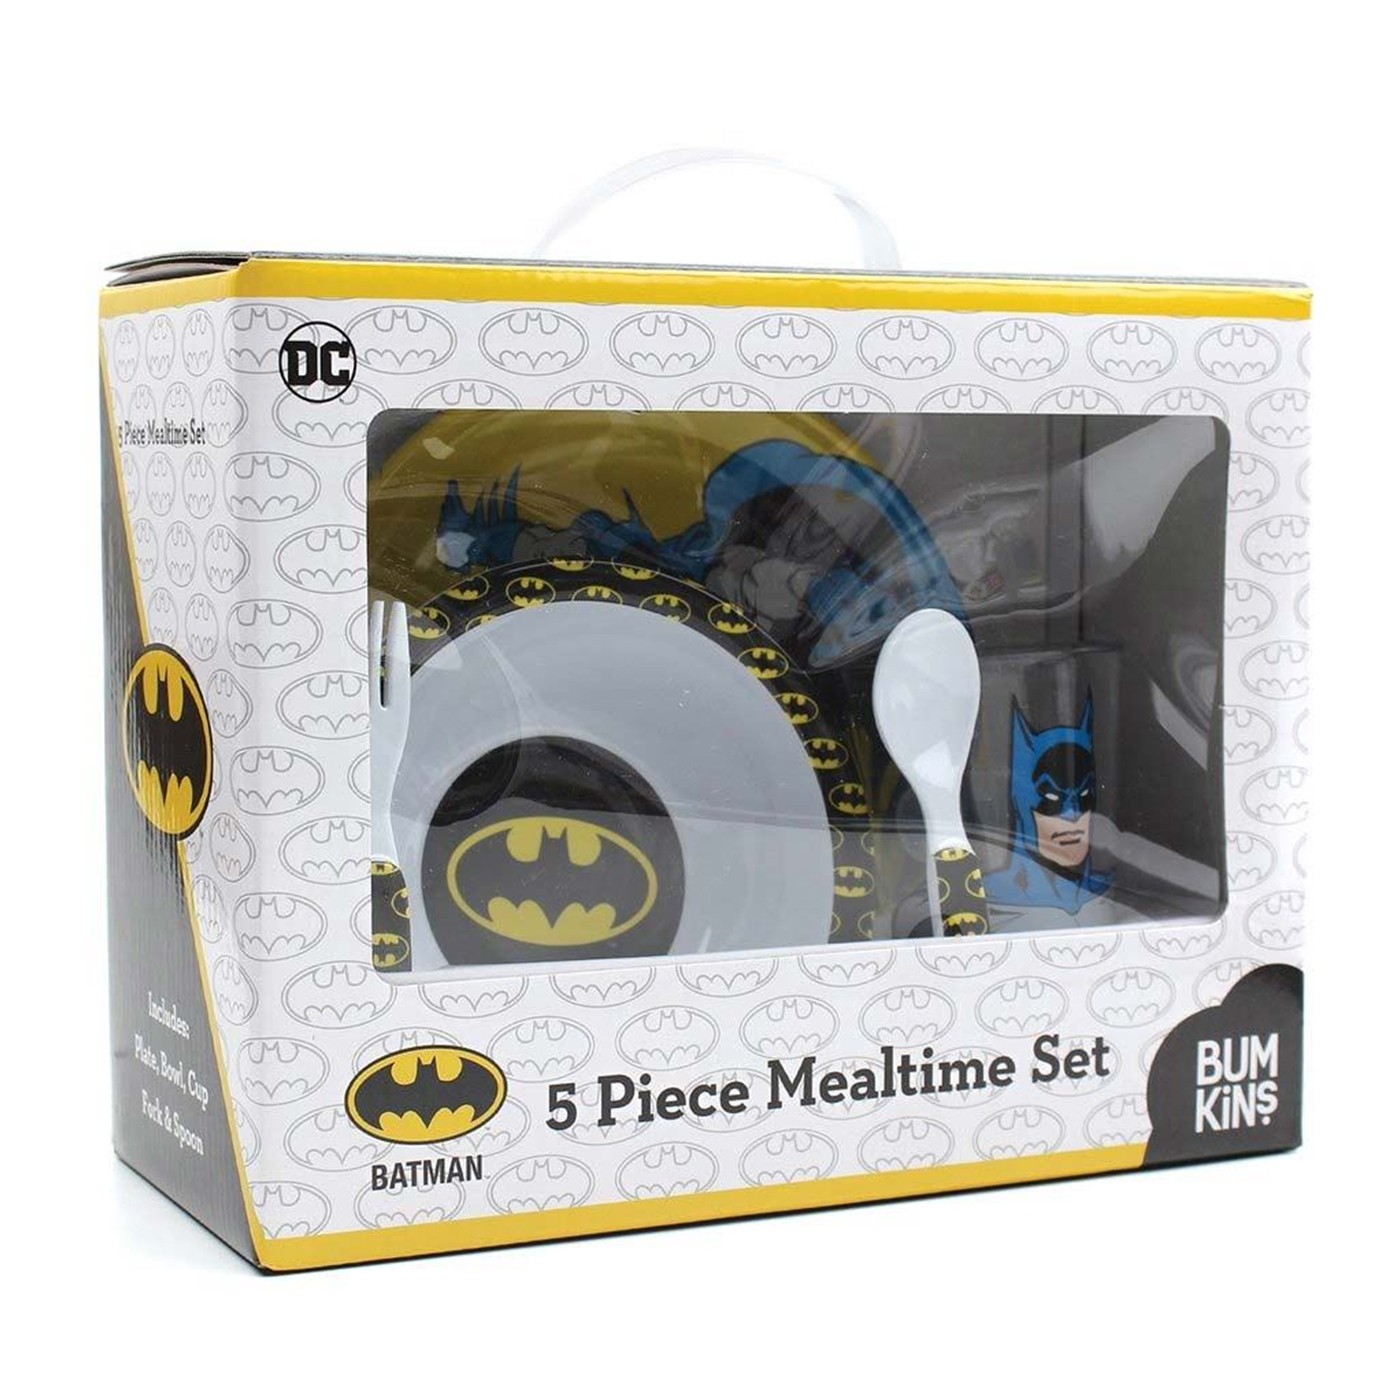 Batman 5 Piece Mealtime Set